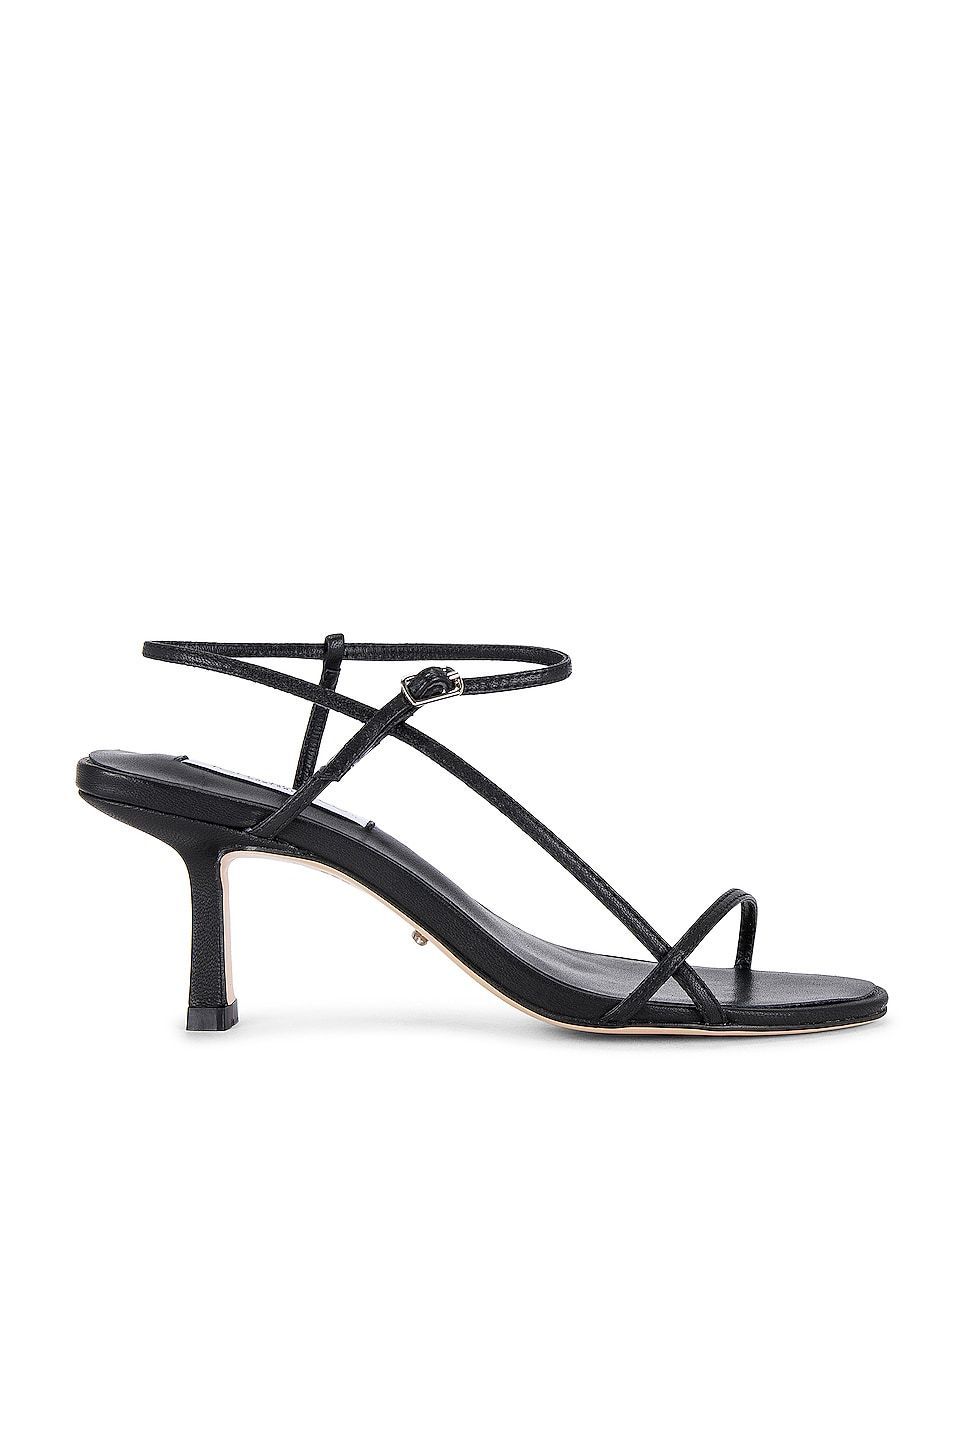 Caprice heel in black